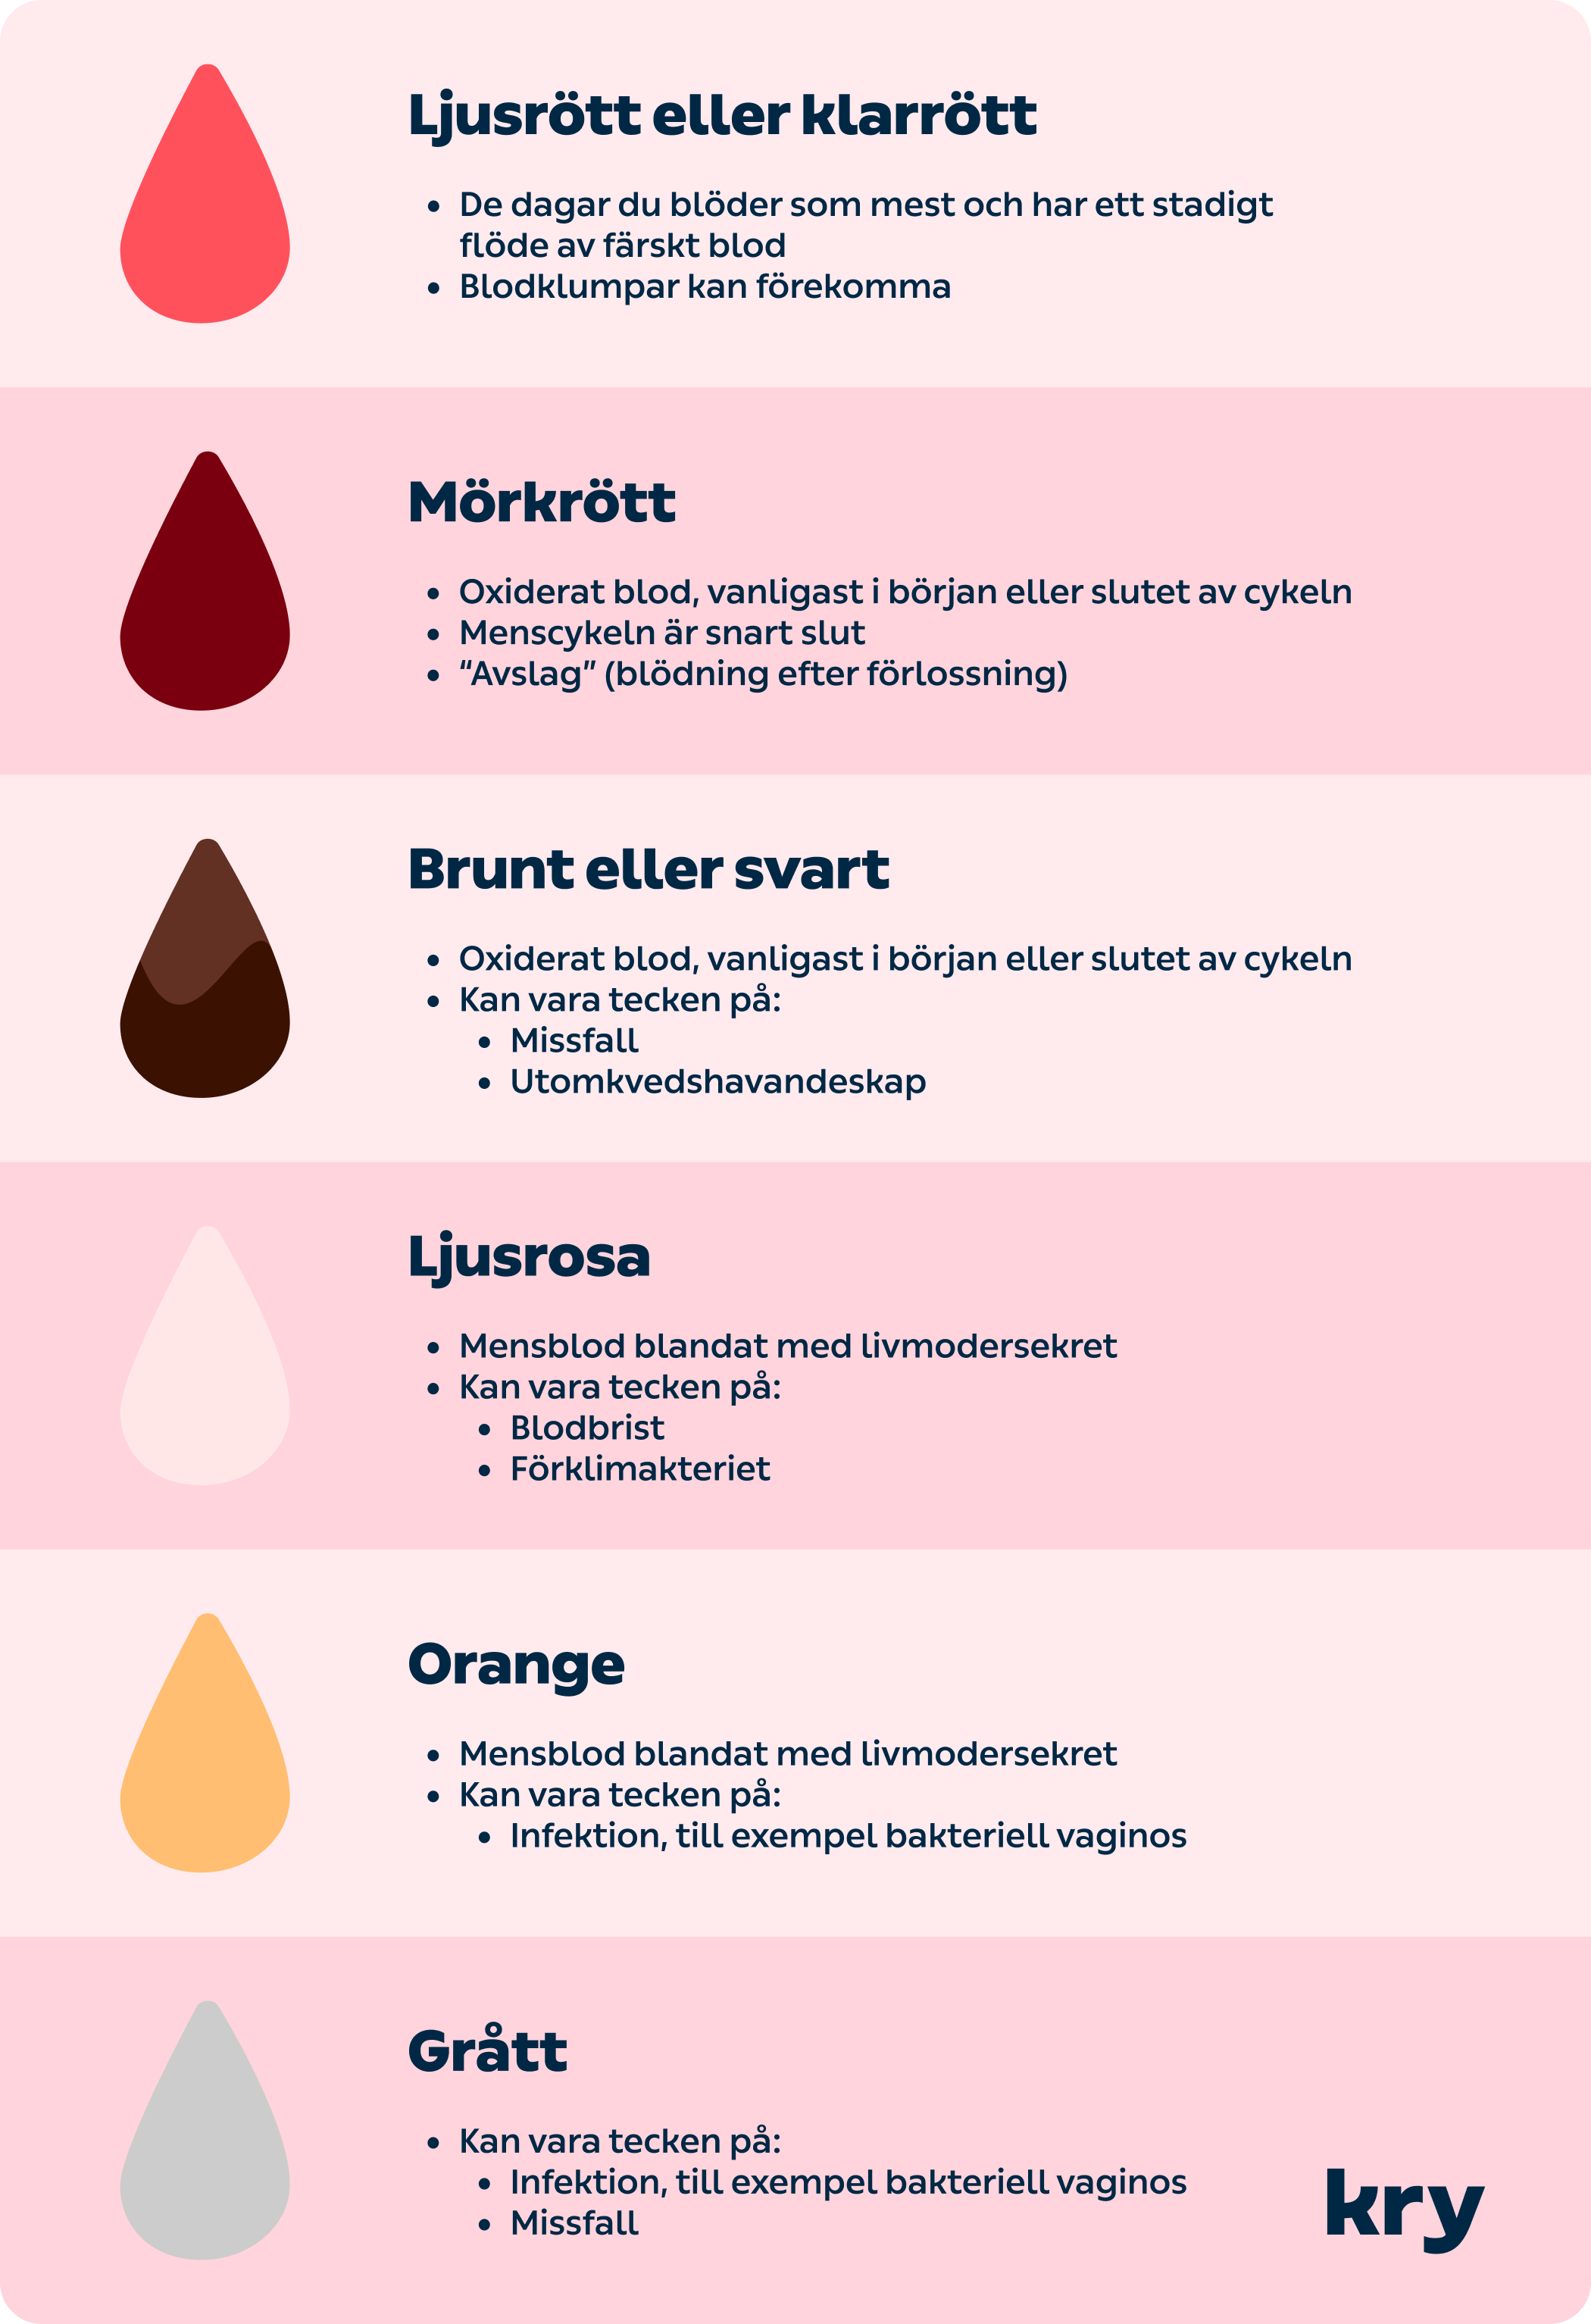 kry.se > Vad betyder färgen på ditt mensblod? > Image > Chart